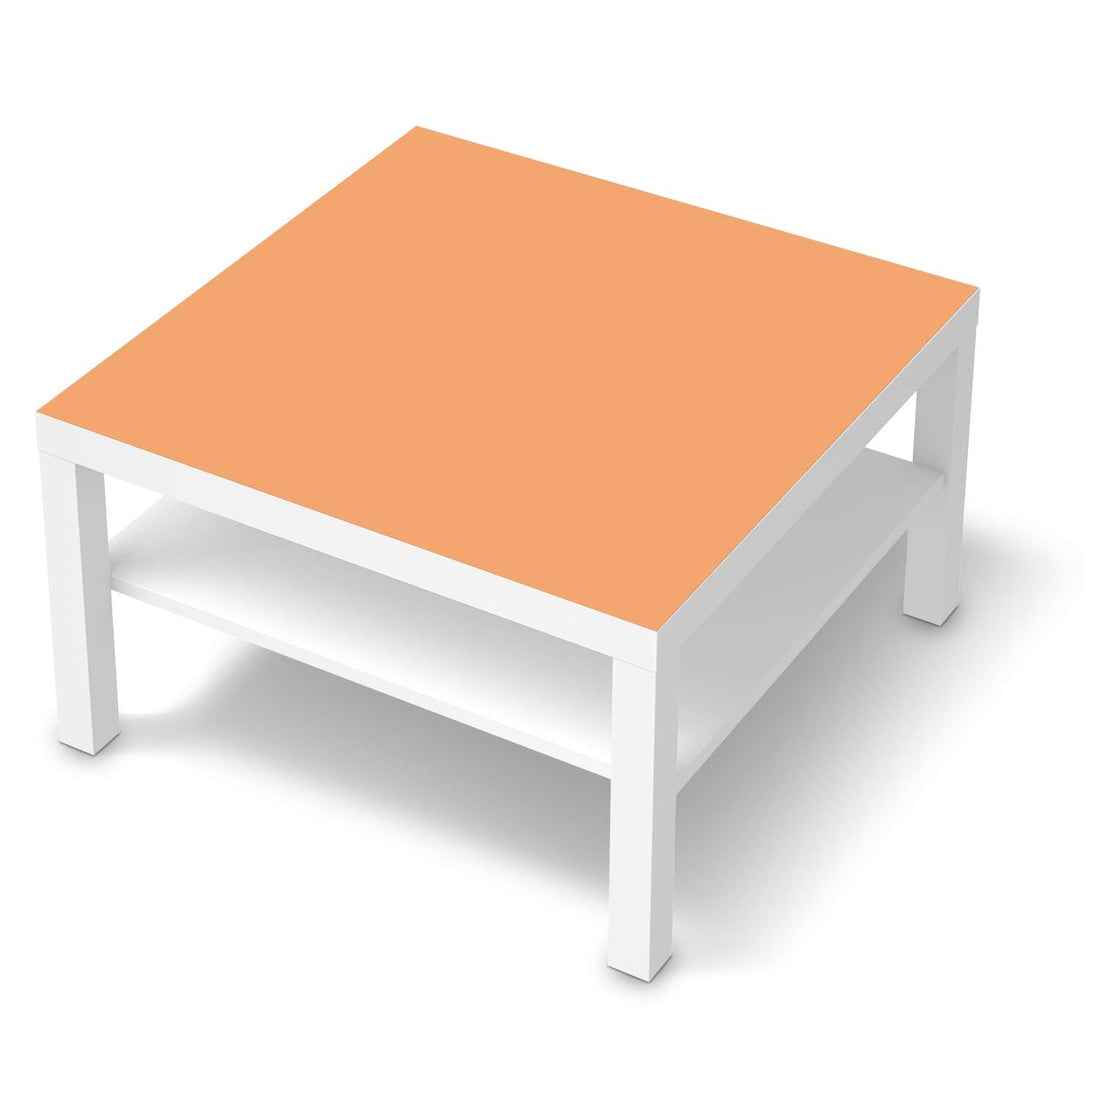 Selbstklebende Folie Orange Light - IKEA Lack Tisch 78x78 cm - weiss